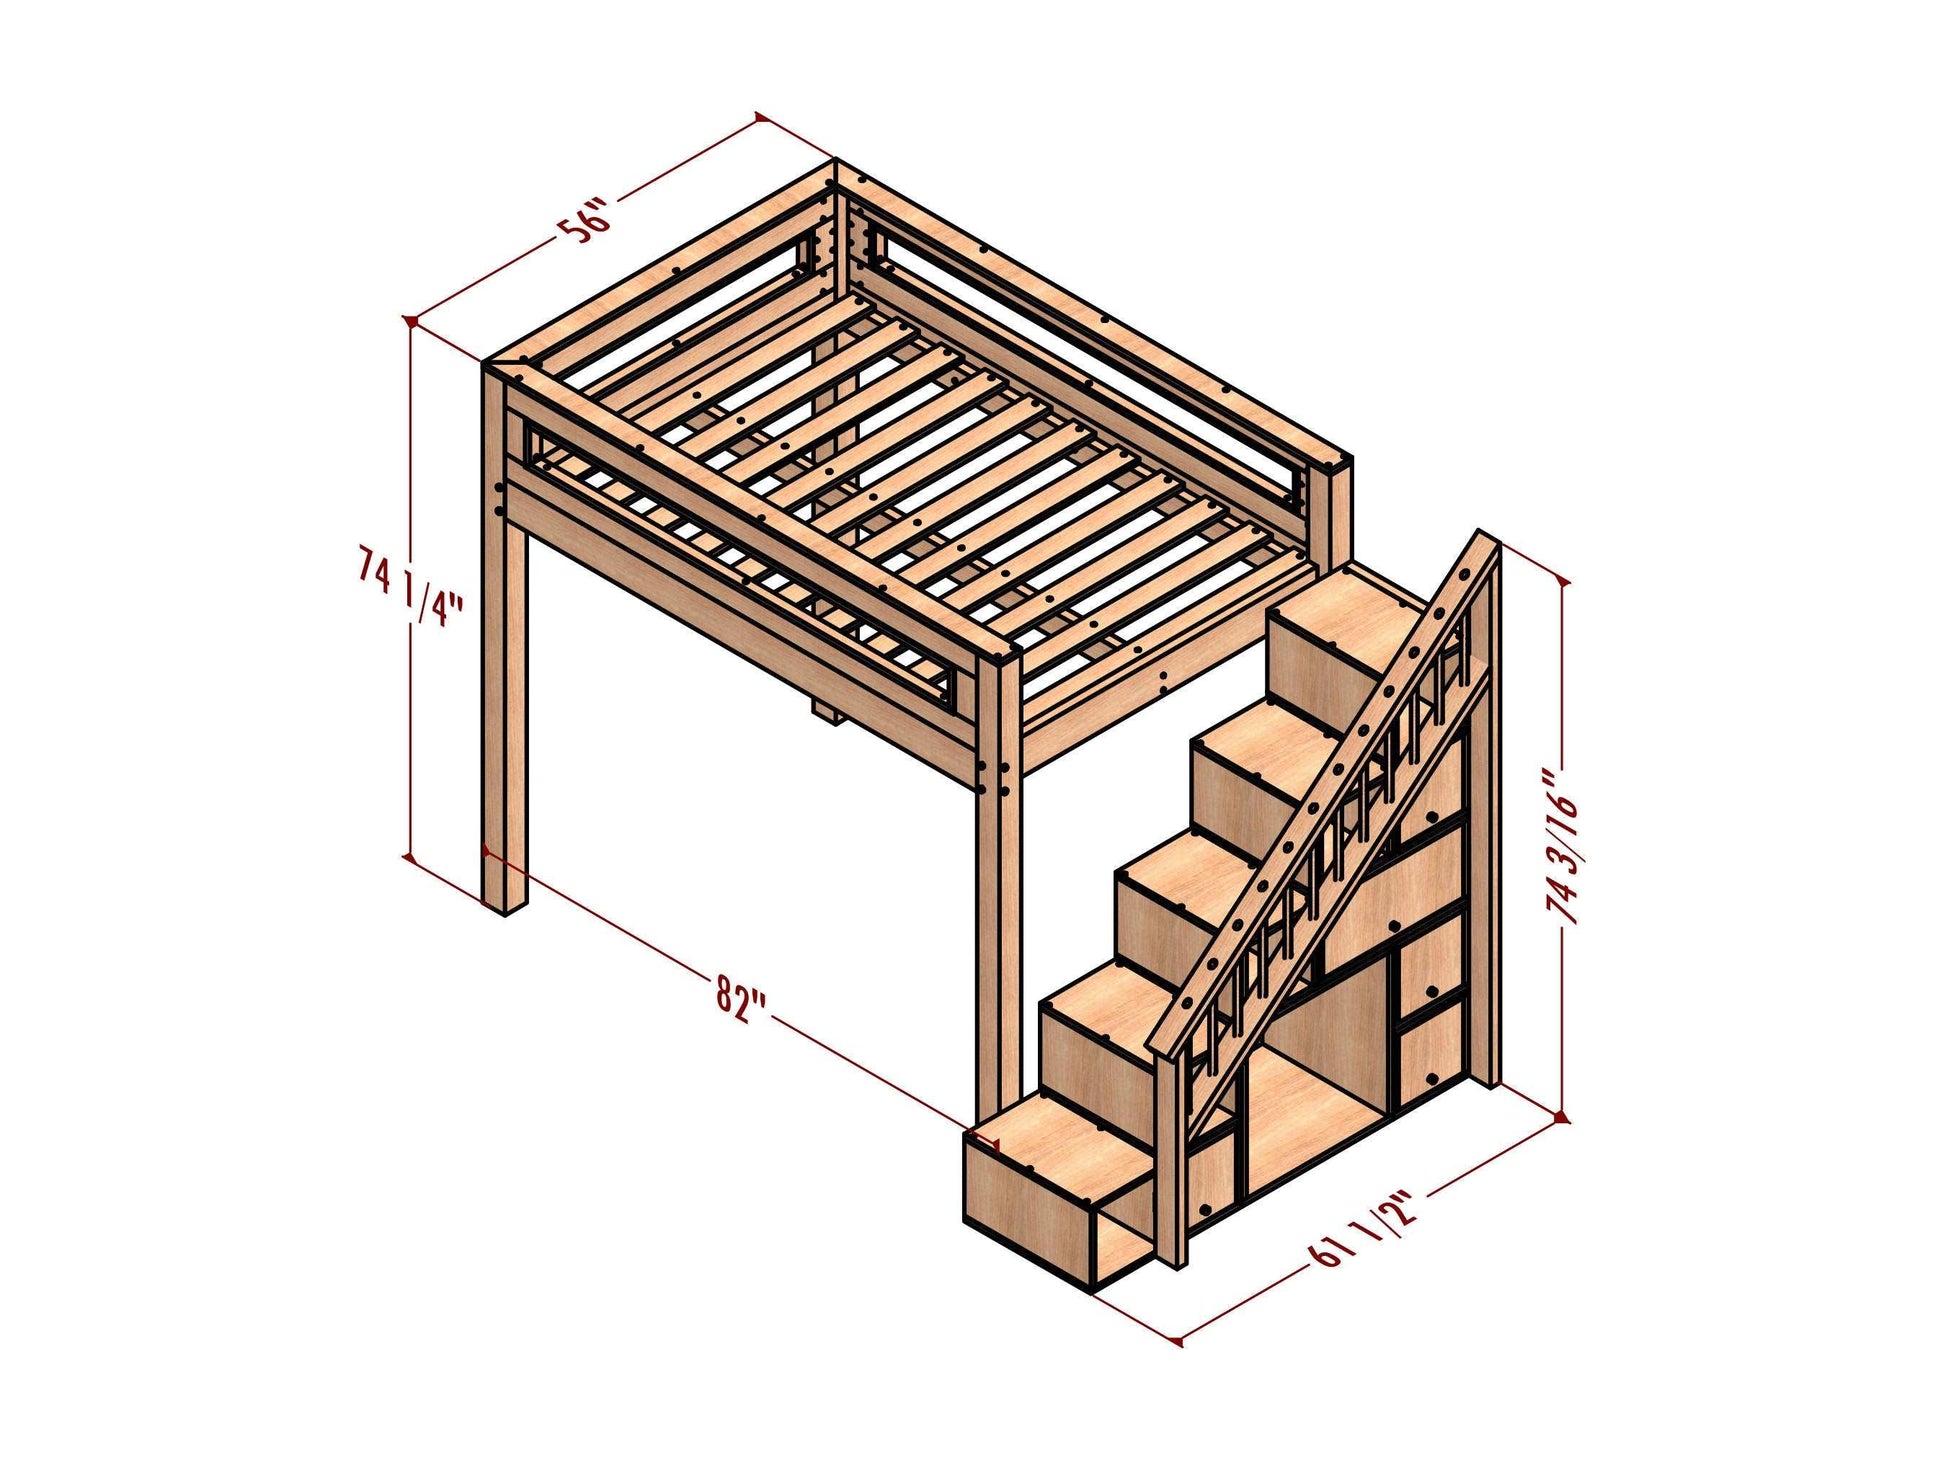 Diy loft bed plan for adult,diy loft bed plans,built in bunkbed plan,building bunkbeds pdf plan